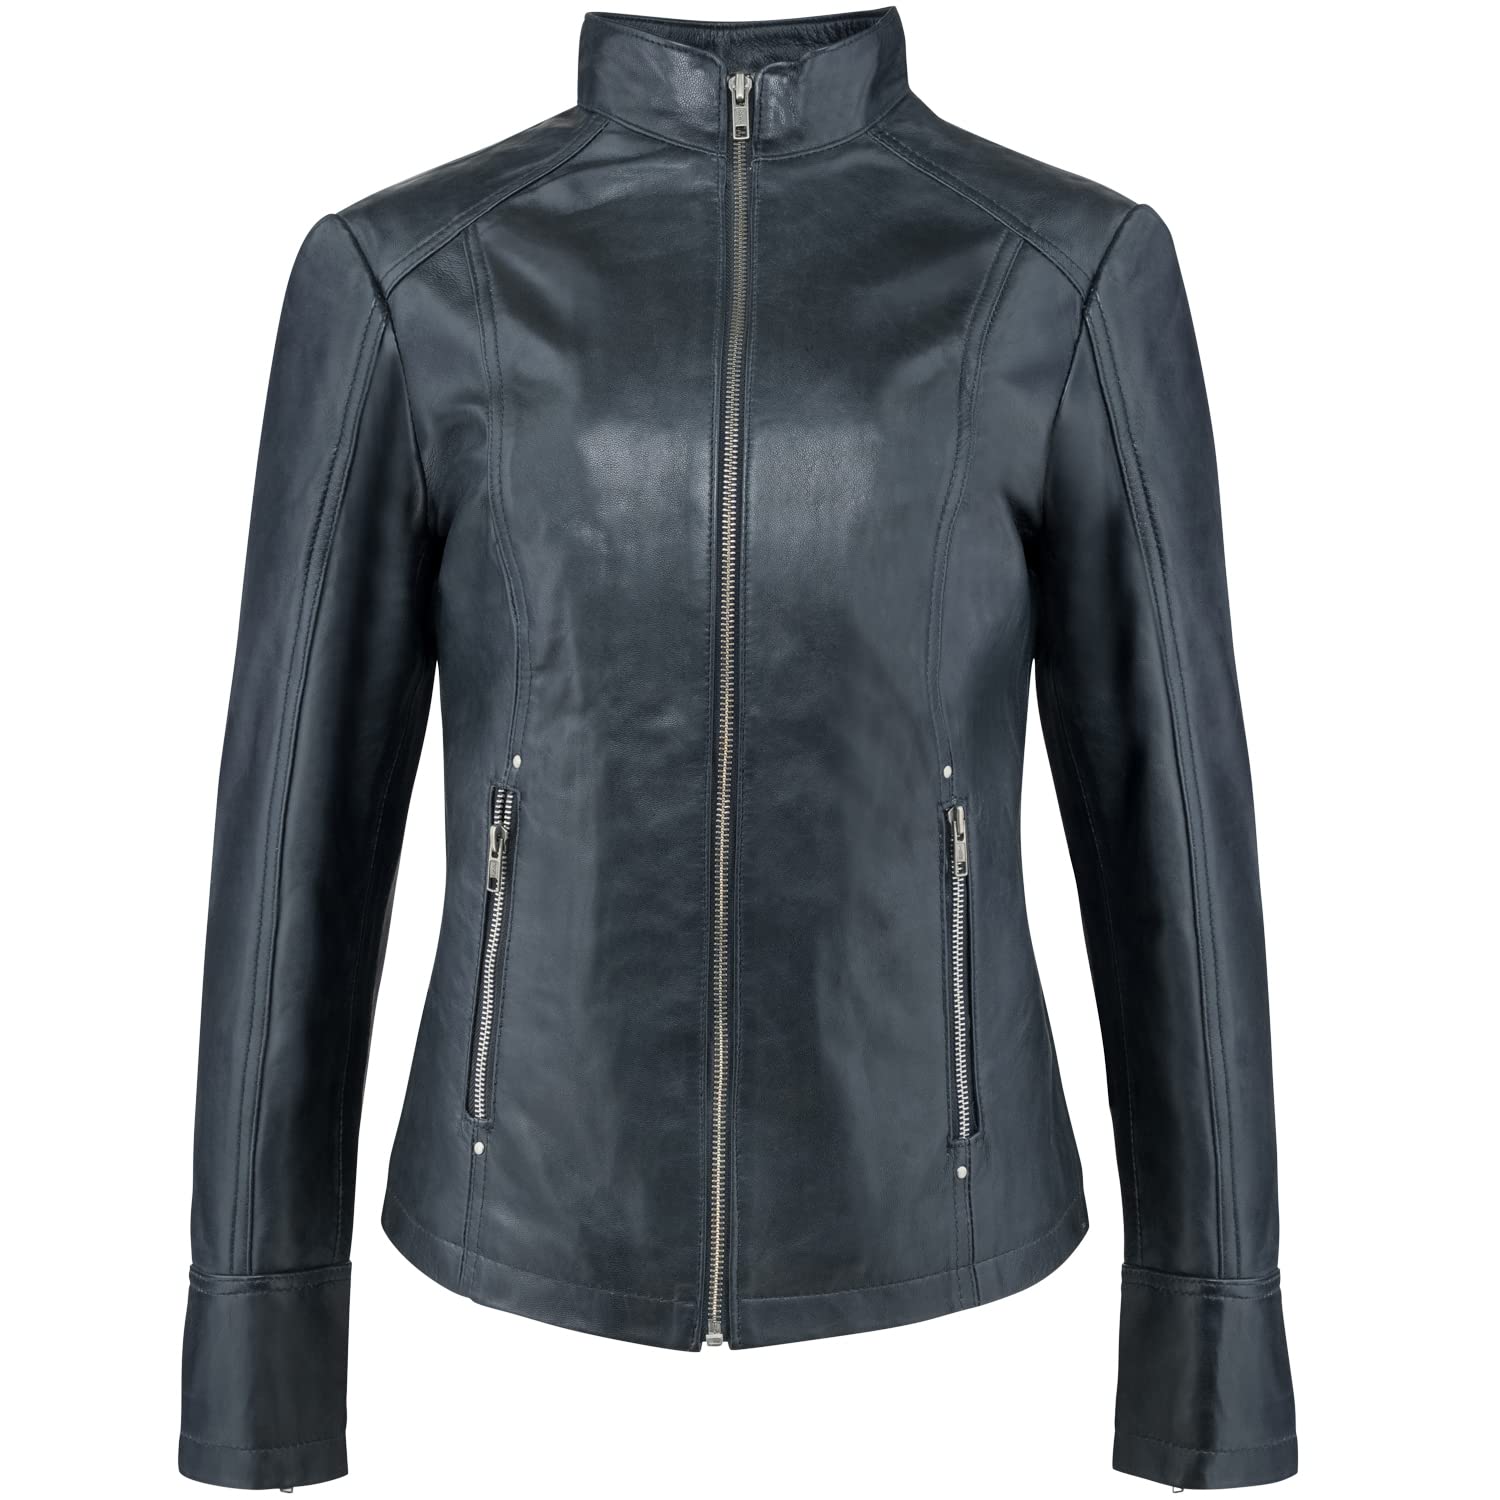 Urban Leather Fashion Lederjacke - Rt01, Schwarz, Größe 38, Medium von URBAN 5884